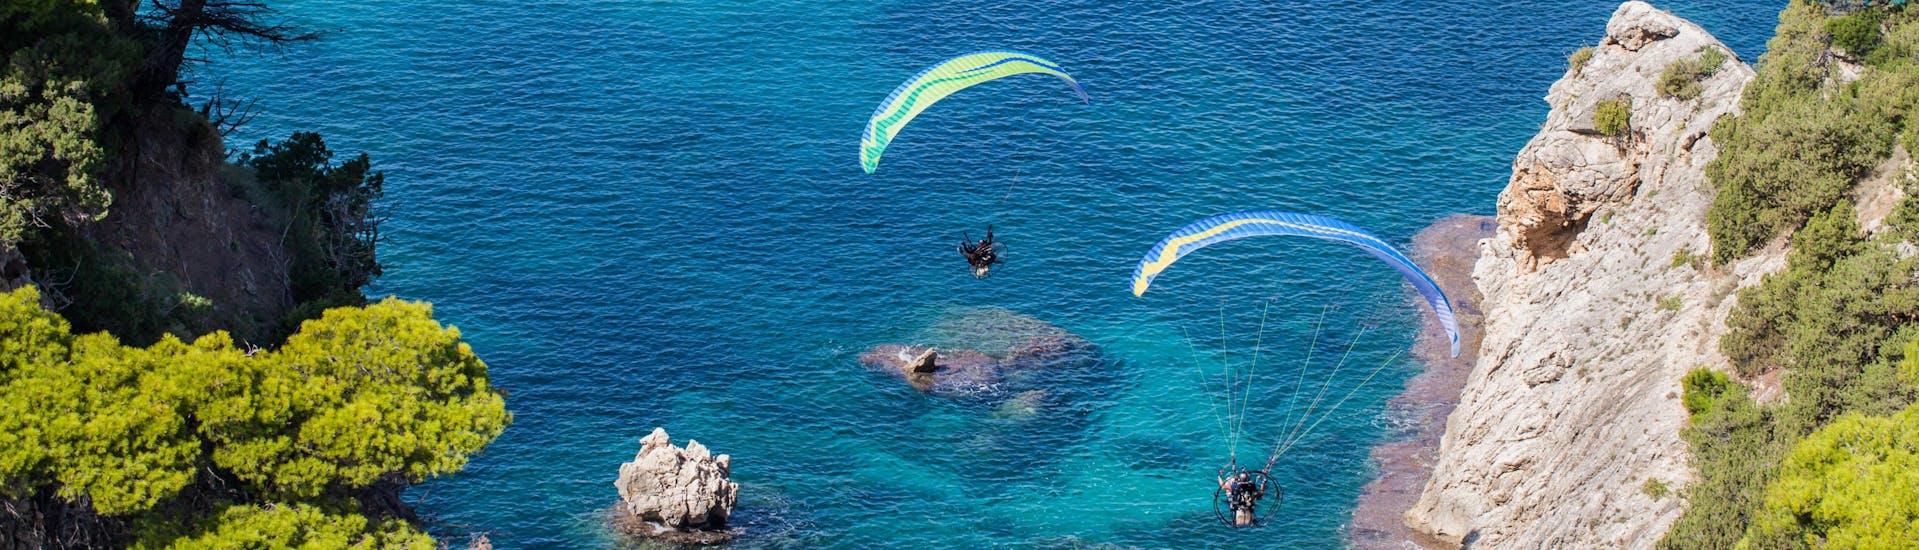 Un entusiasmado participante en un vuelo en parapente biplaza sobrevuela Avdou, uno de los sitios más populares para volar en parapente.